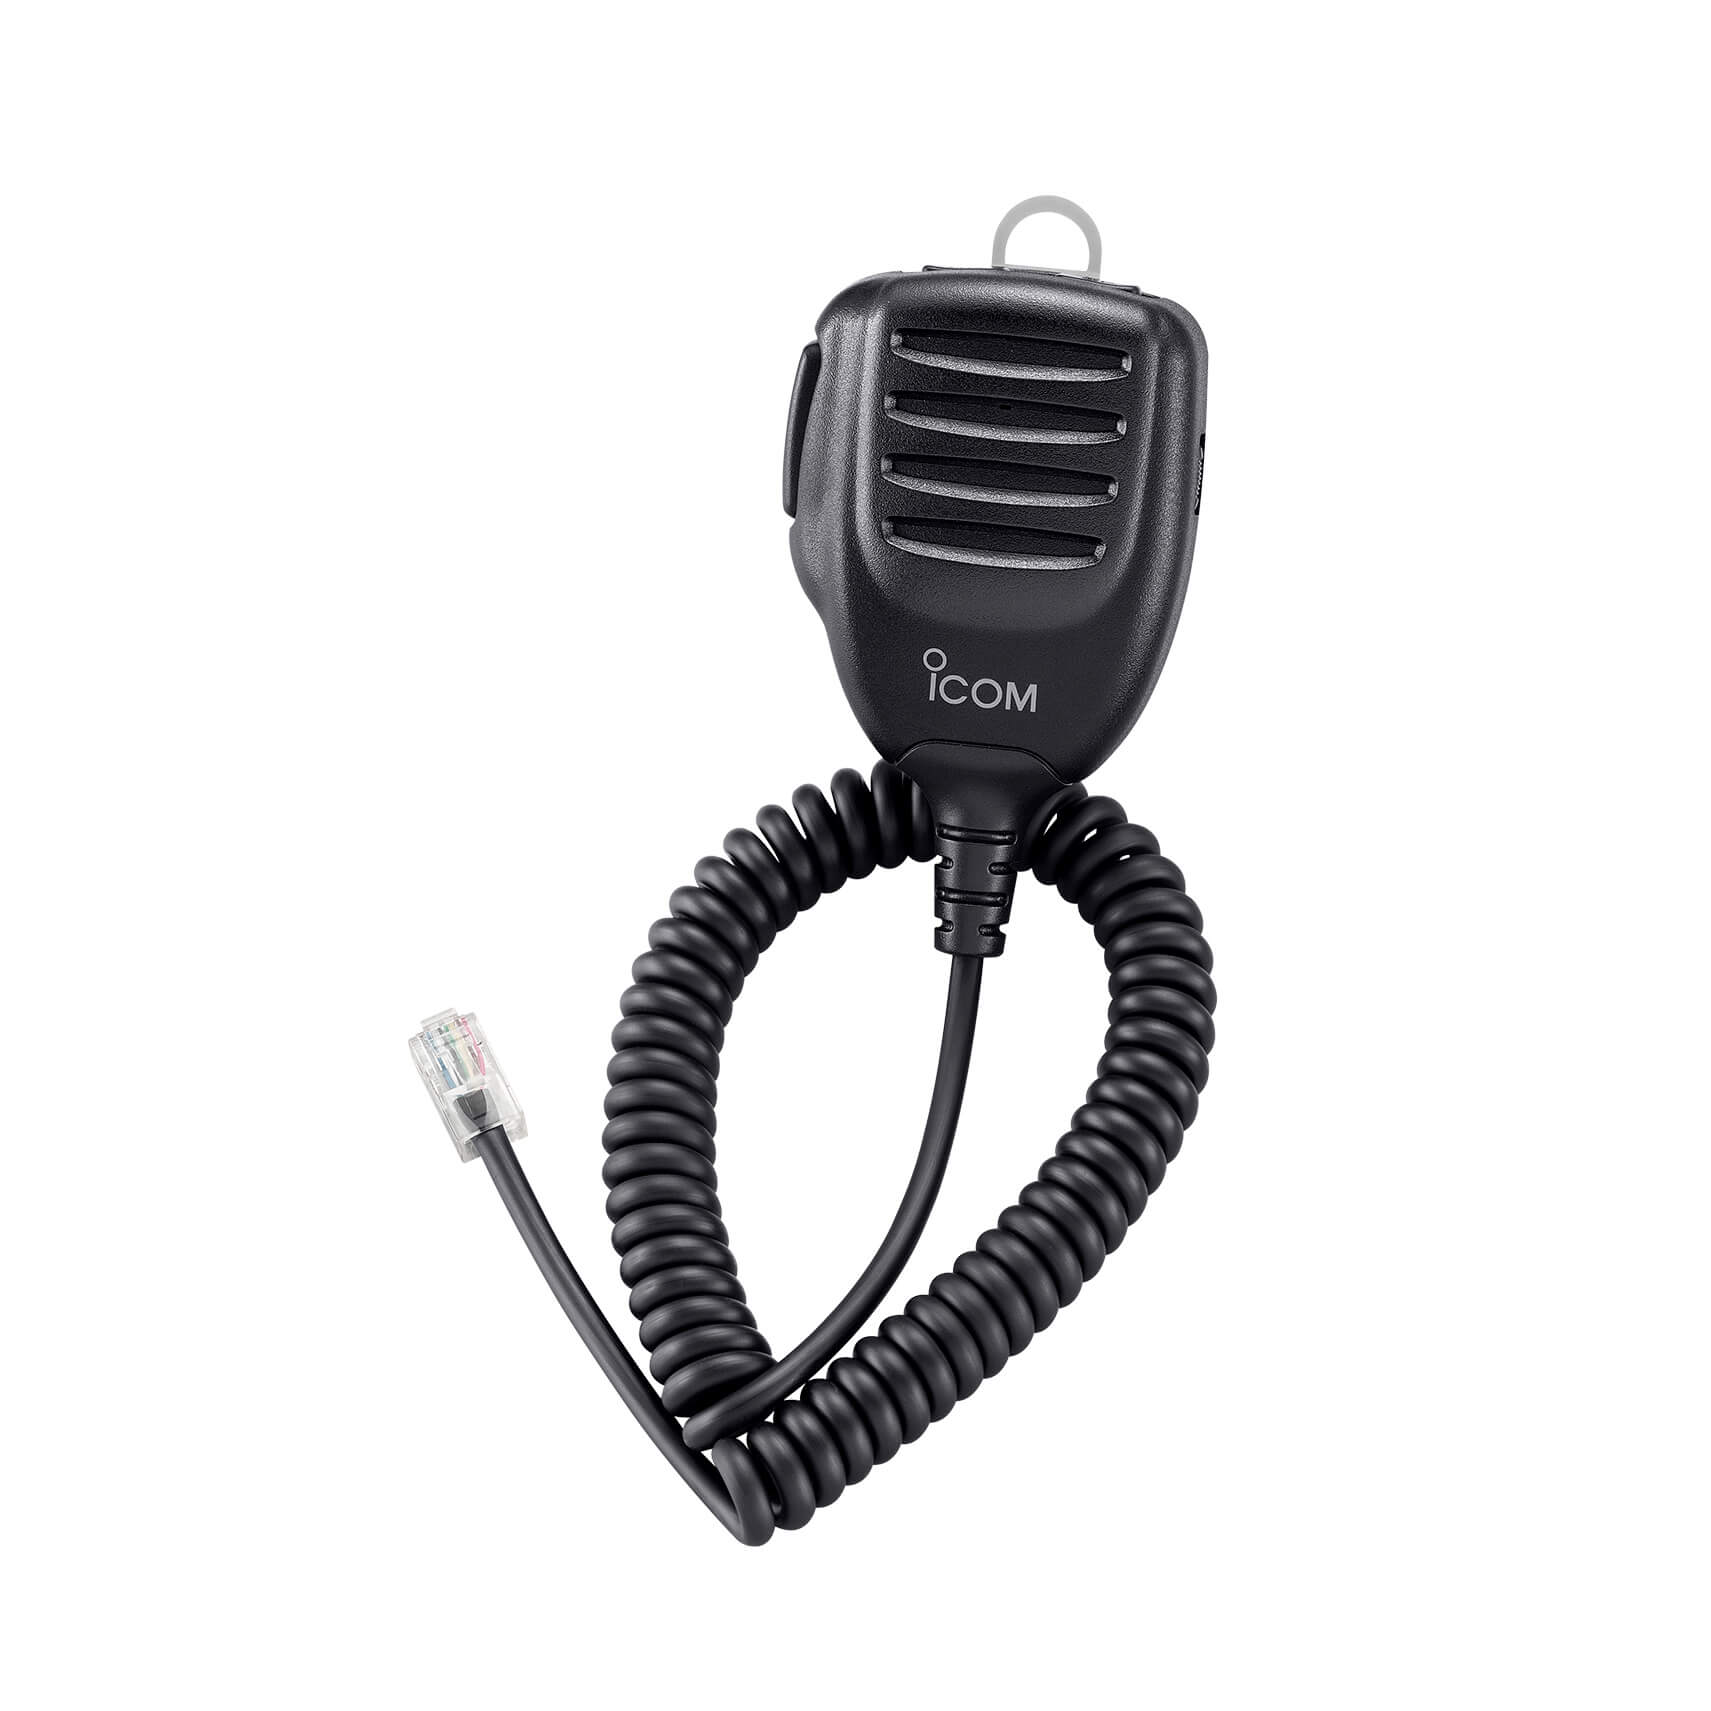 ICOM HM-216 handheld microphone - D2N